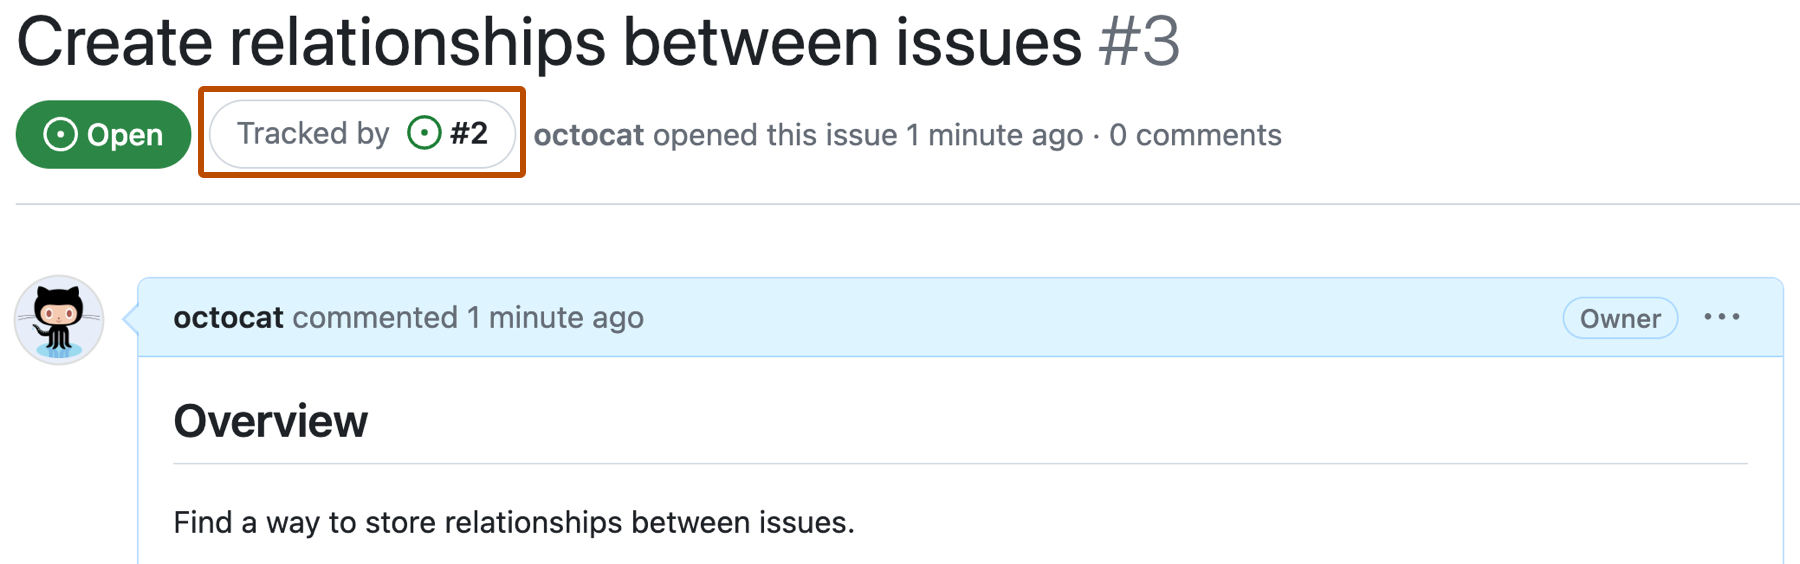 Screenshot eines GitHub-Problems mit dem Namen „Erstellen von Beziehungen zwischen Problemen“ und Problem Nr. 3. Eine Schaltfläche unter dem Titel des Problems mit der Aufschrift „Tracked by issue #2“ ist dunkelorange dargestellt.